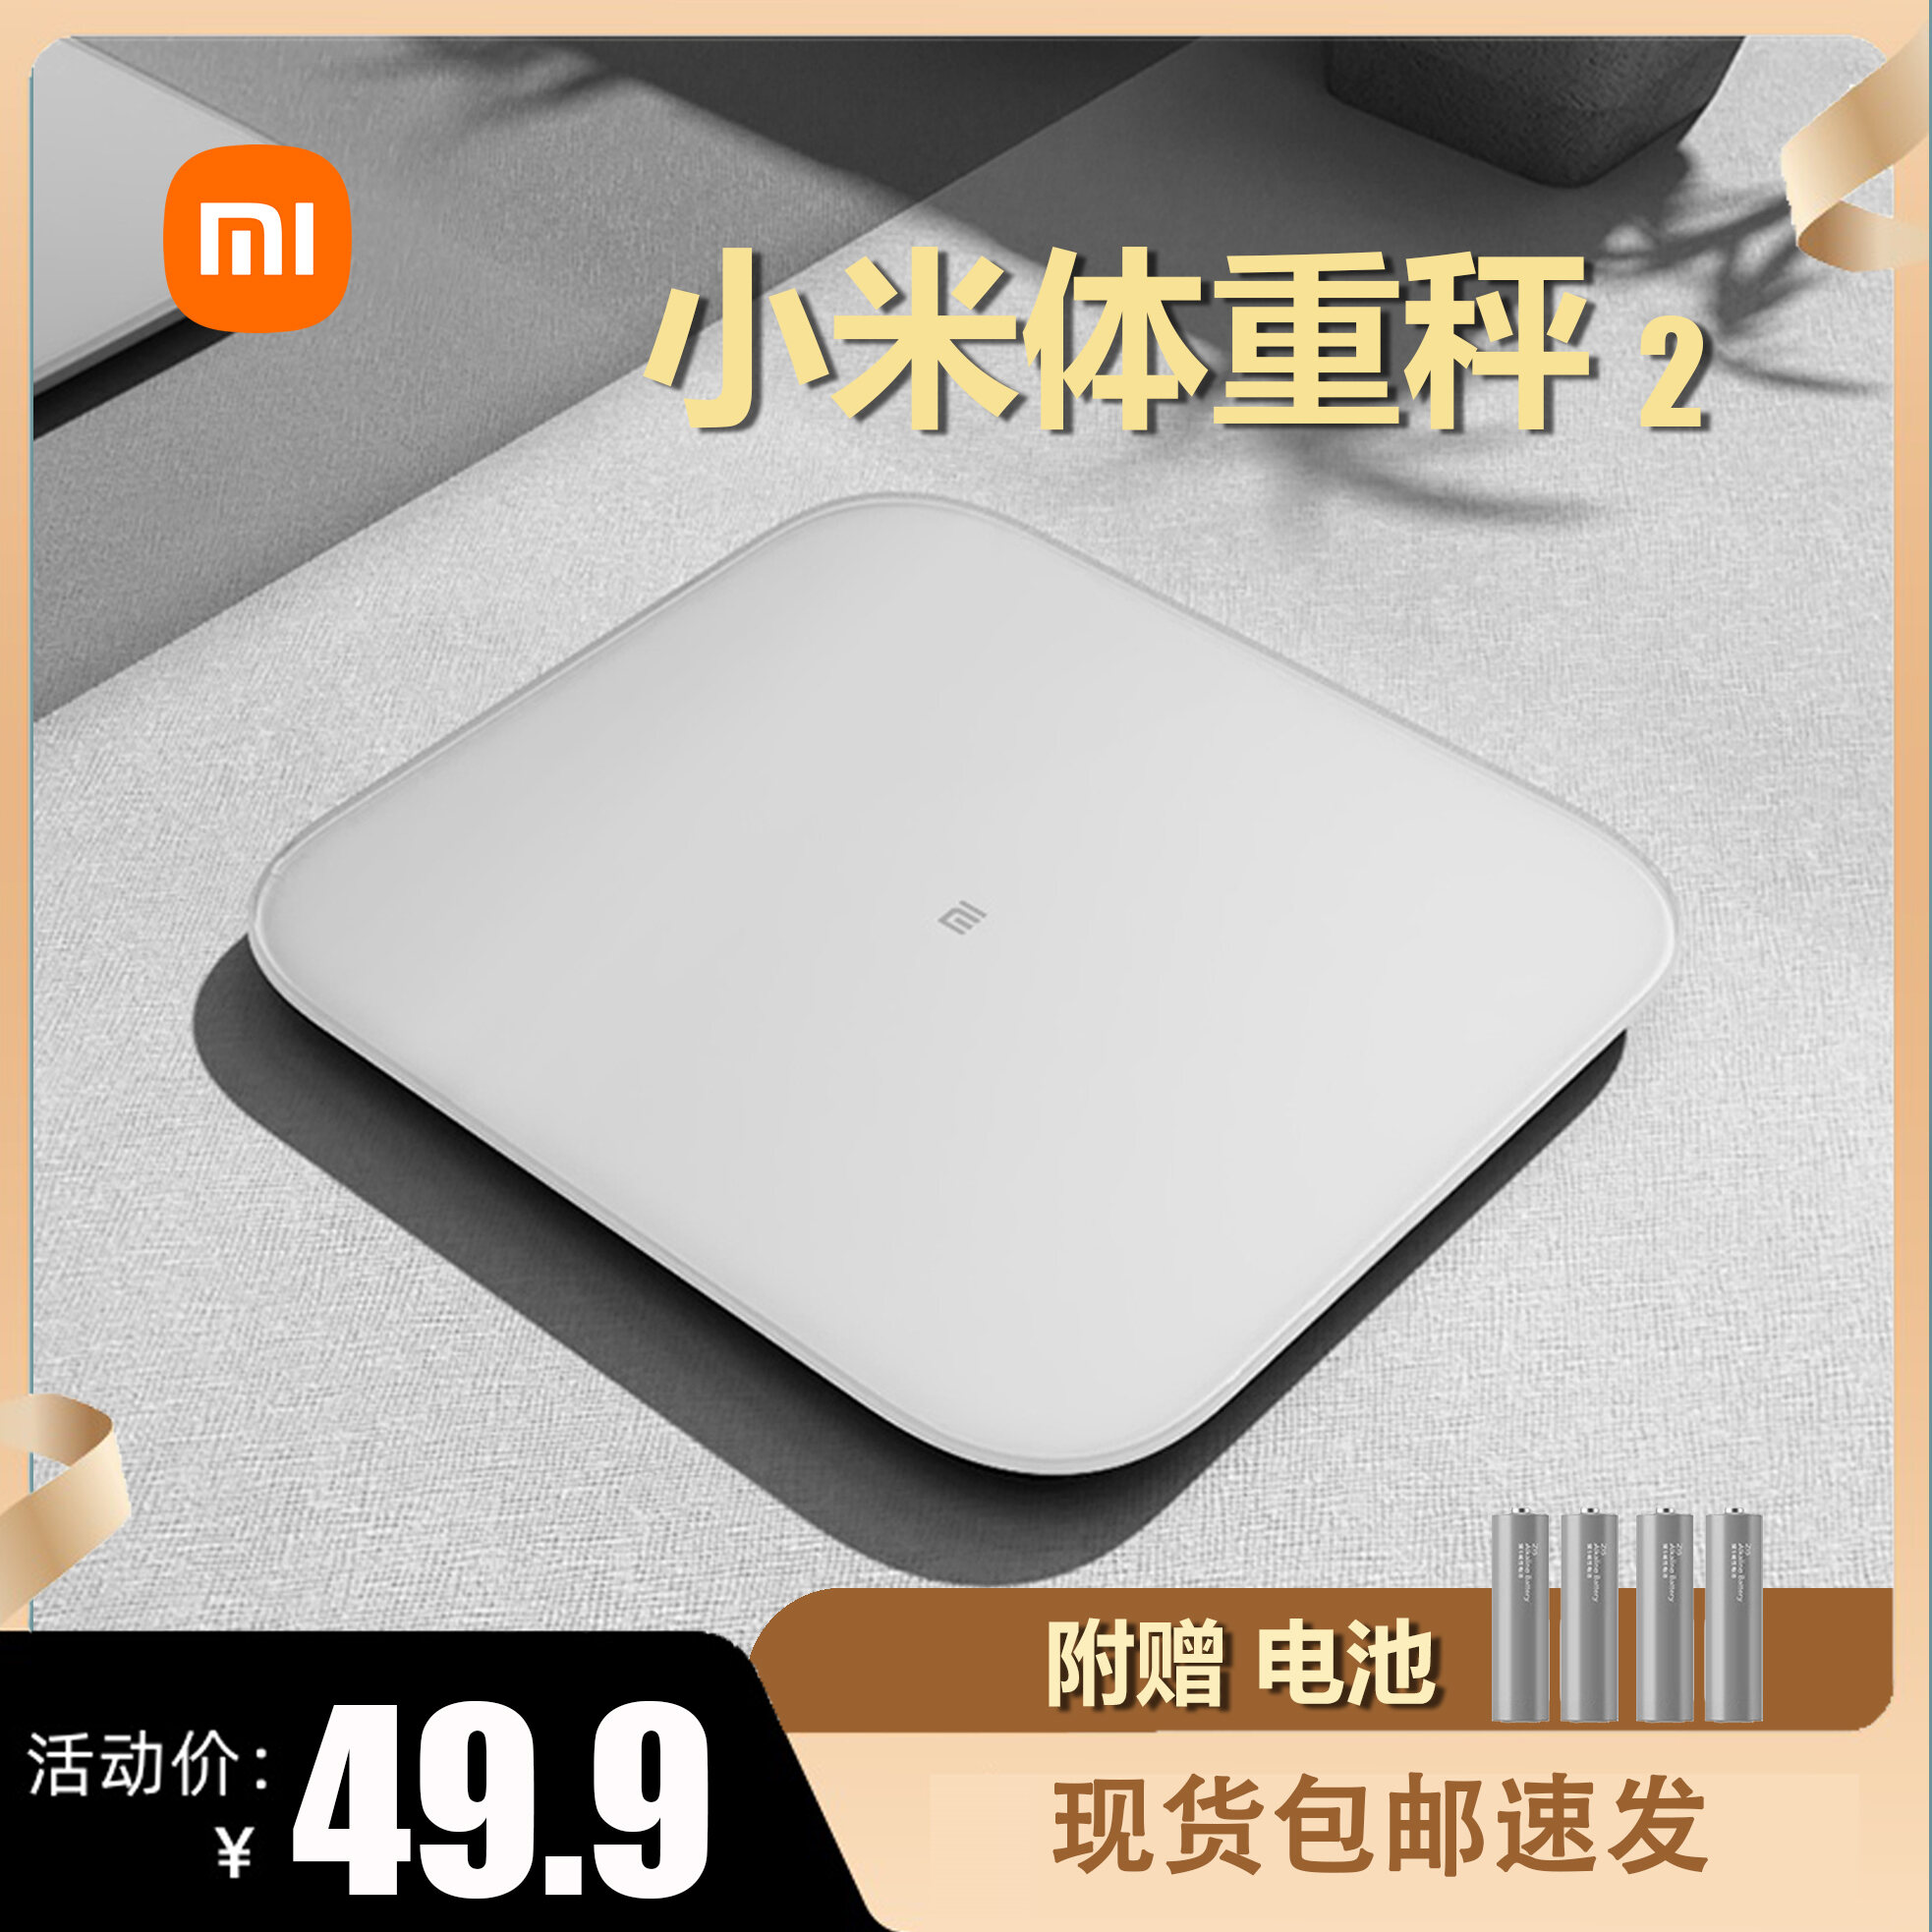 Cân Nặng Xiaomi 2 Cân Trọng Lượng Cơ Thể Xiaomi Gia Dụng Thông Minh Đo Mỡ Cơ Thể Người Trẻ Sơ Sinh Người Lớn Cân Nặng Khỏe Mạnh Cân Nặng